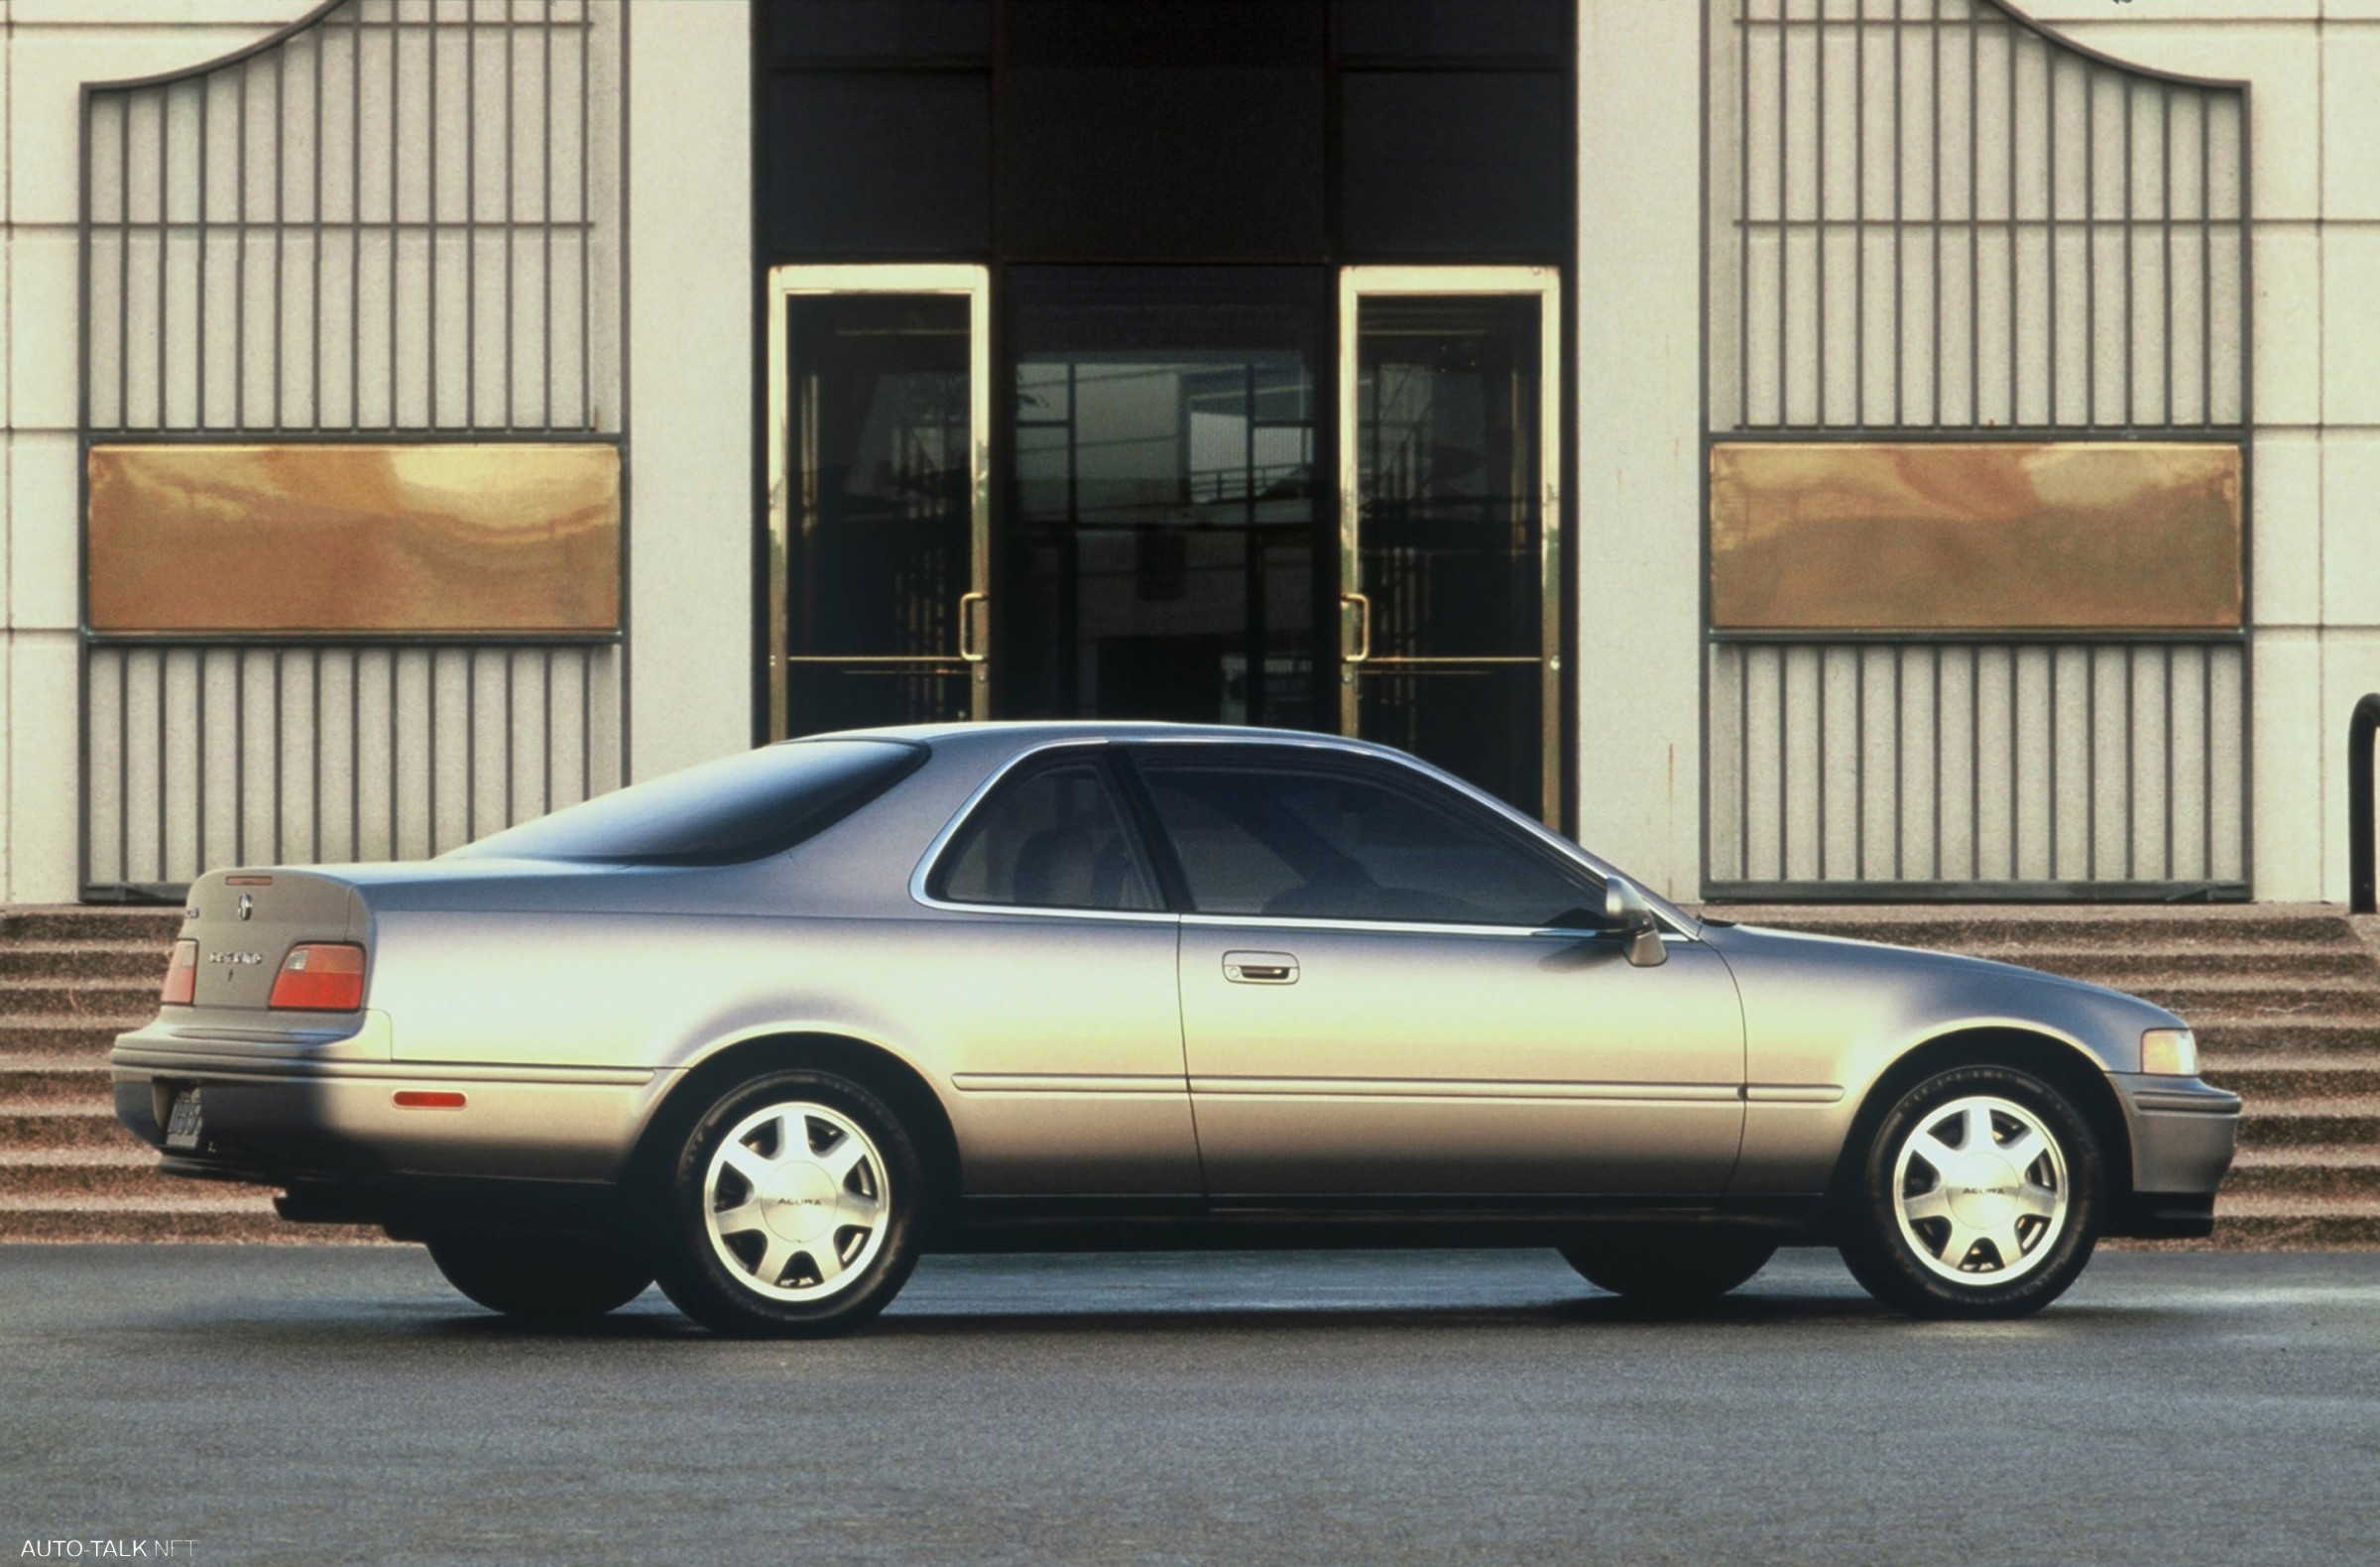 1994 Acura Legend